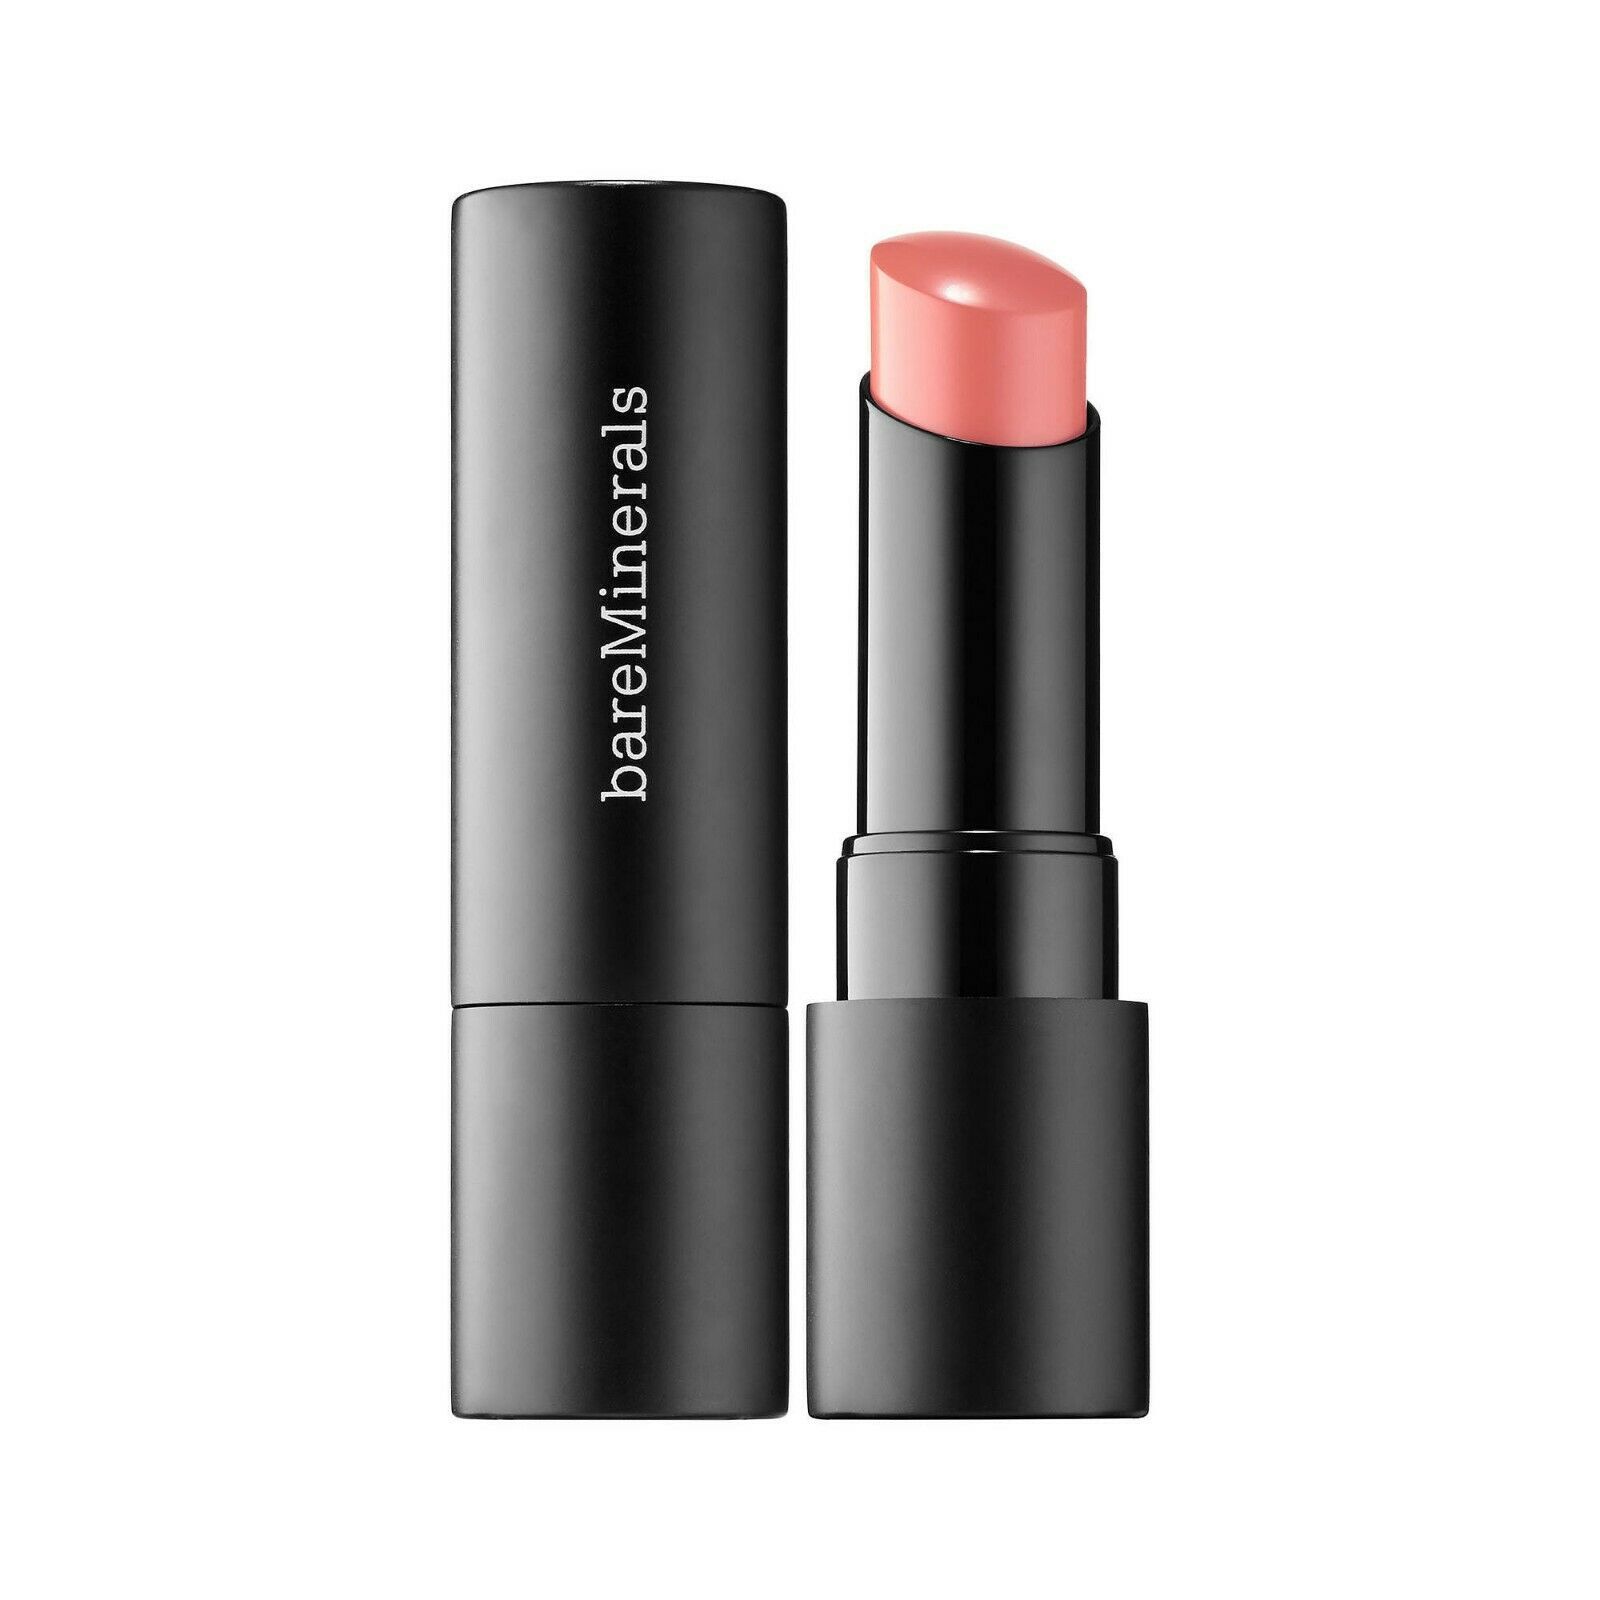 BareMinerals gen Nude lipstick. 